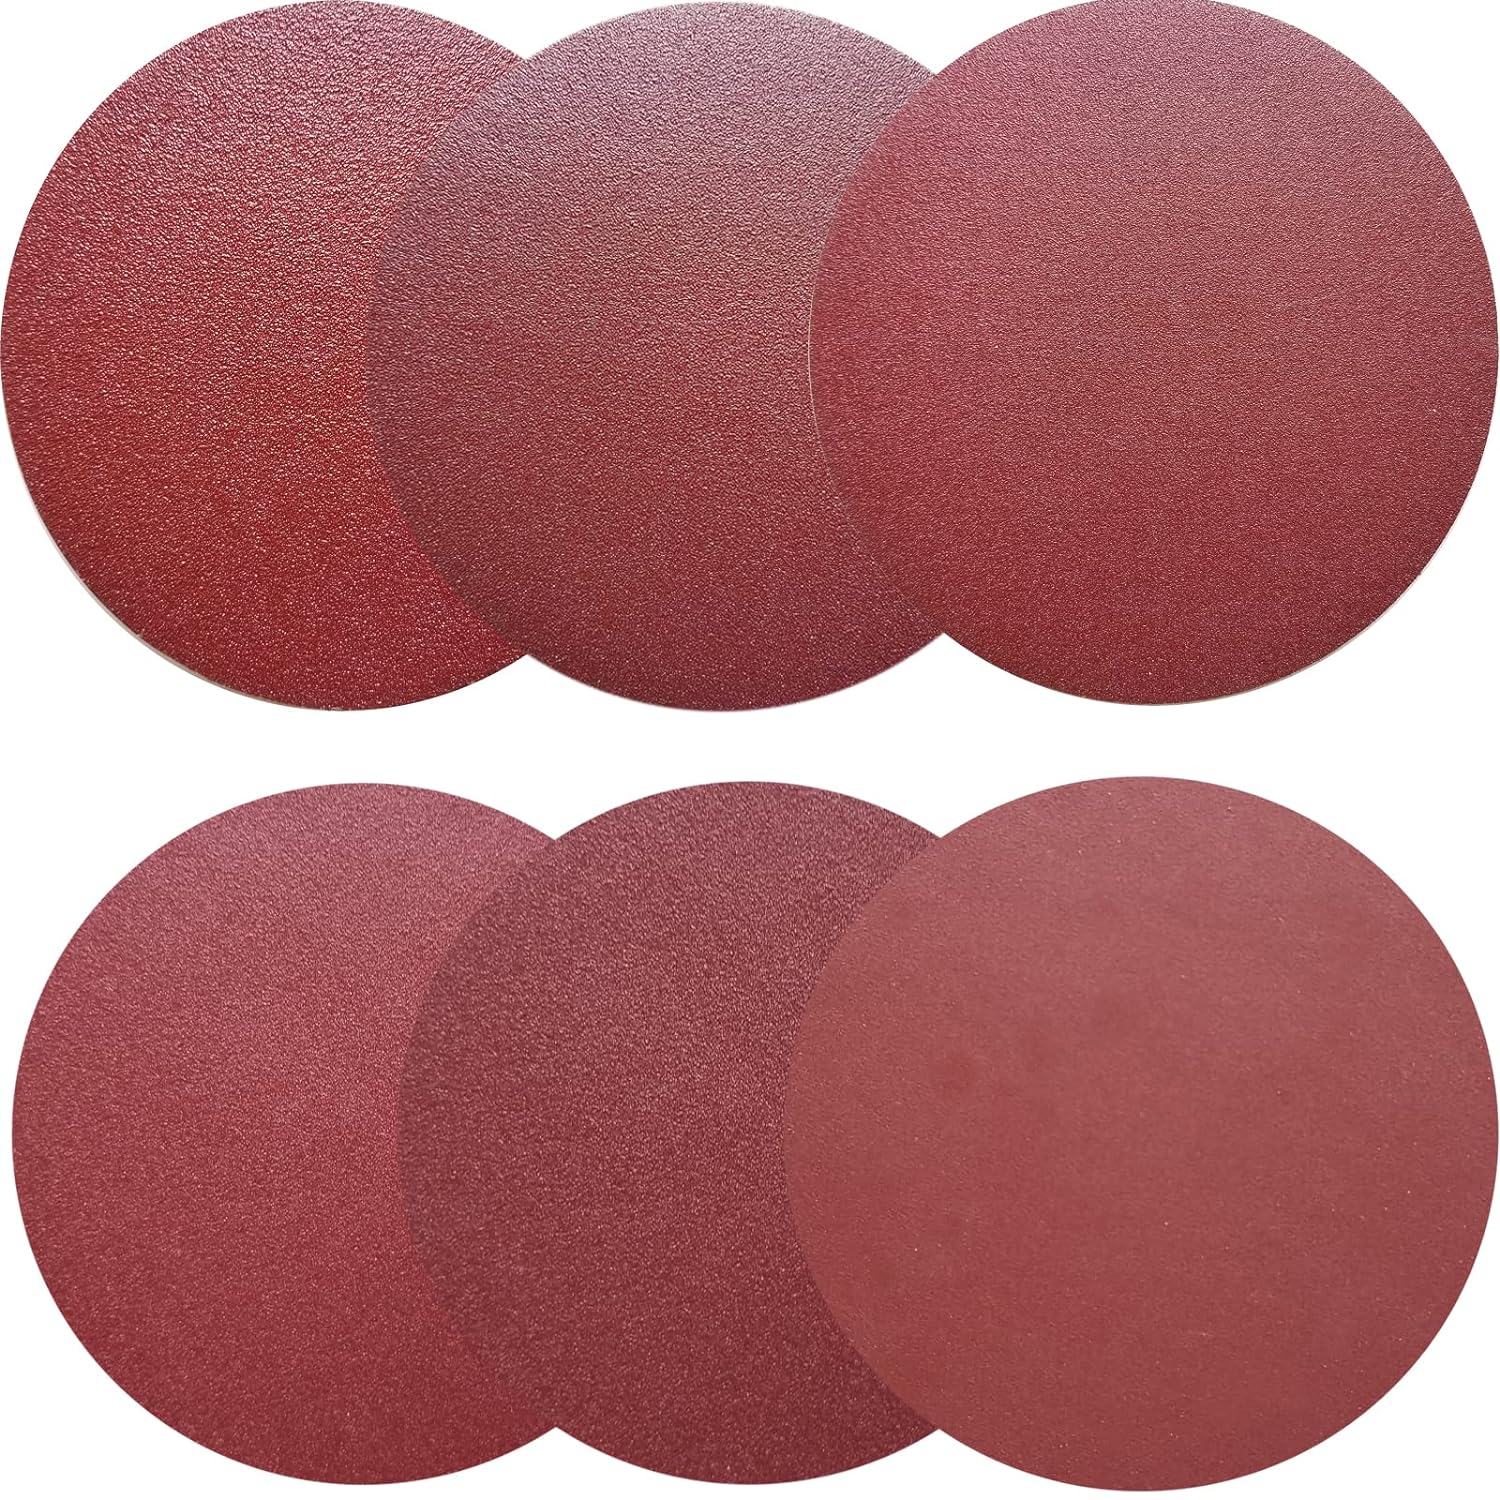 10" (254mm) PSA Red Grain Sanding Discs For Wet/Dry Sanding (60-400 Grit), 1 Disc